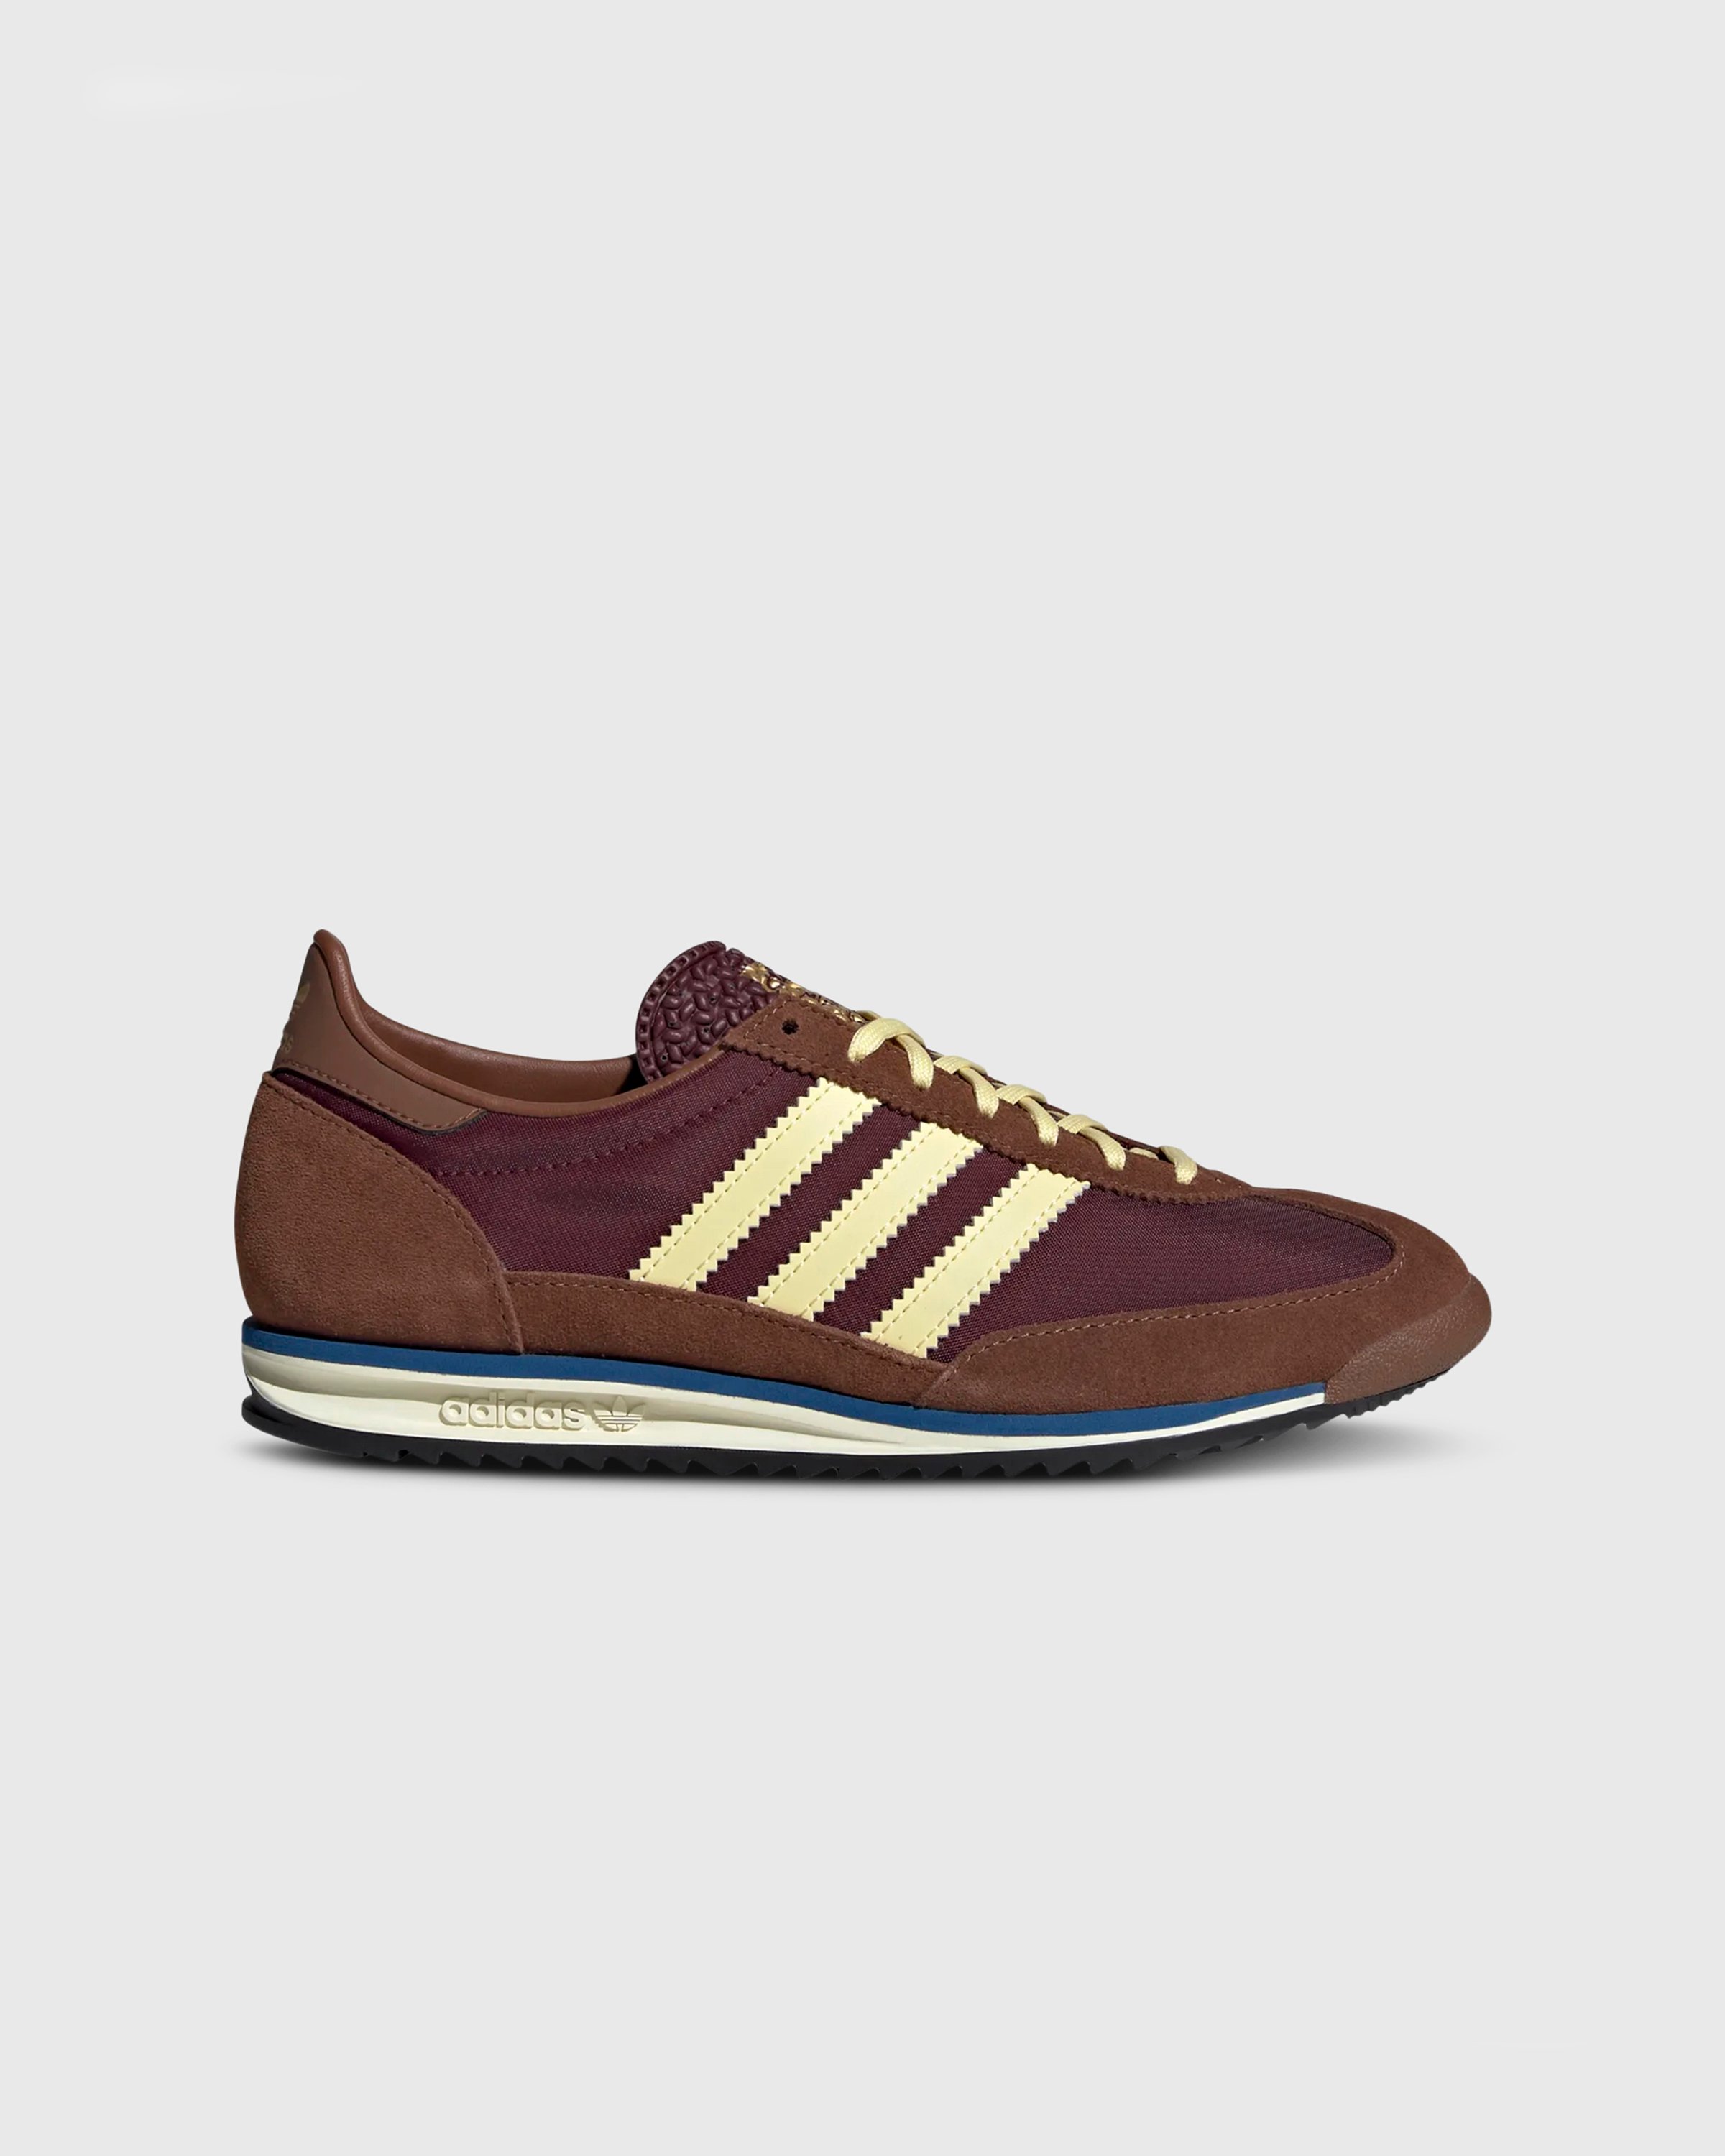 Adidas - SL 72 OG W          MAROON/ALMYEL/PREBRN - Footwear - Brown - Image 1